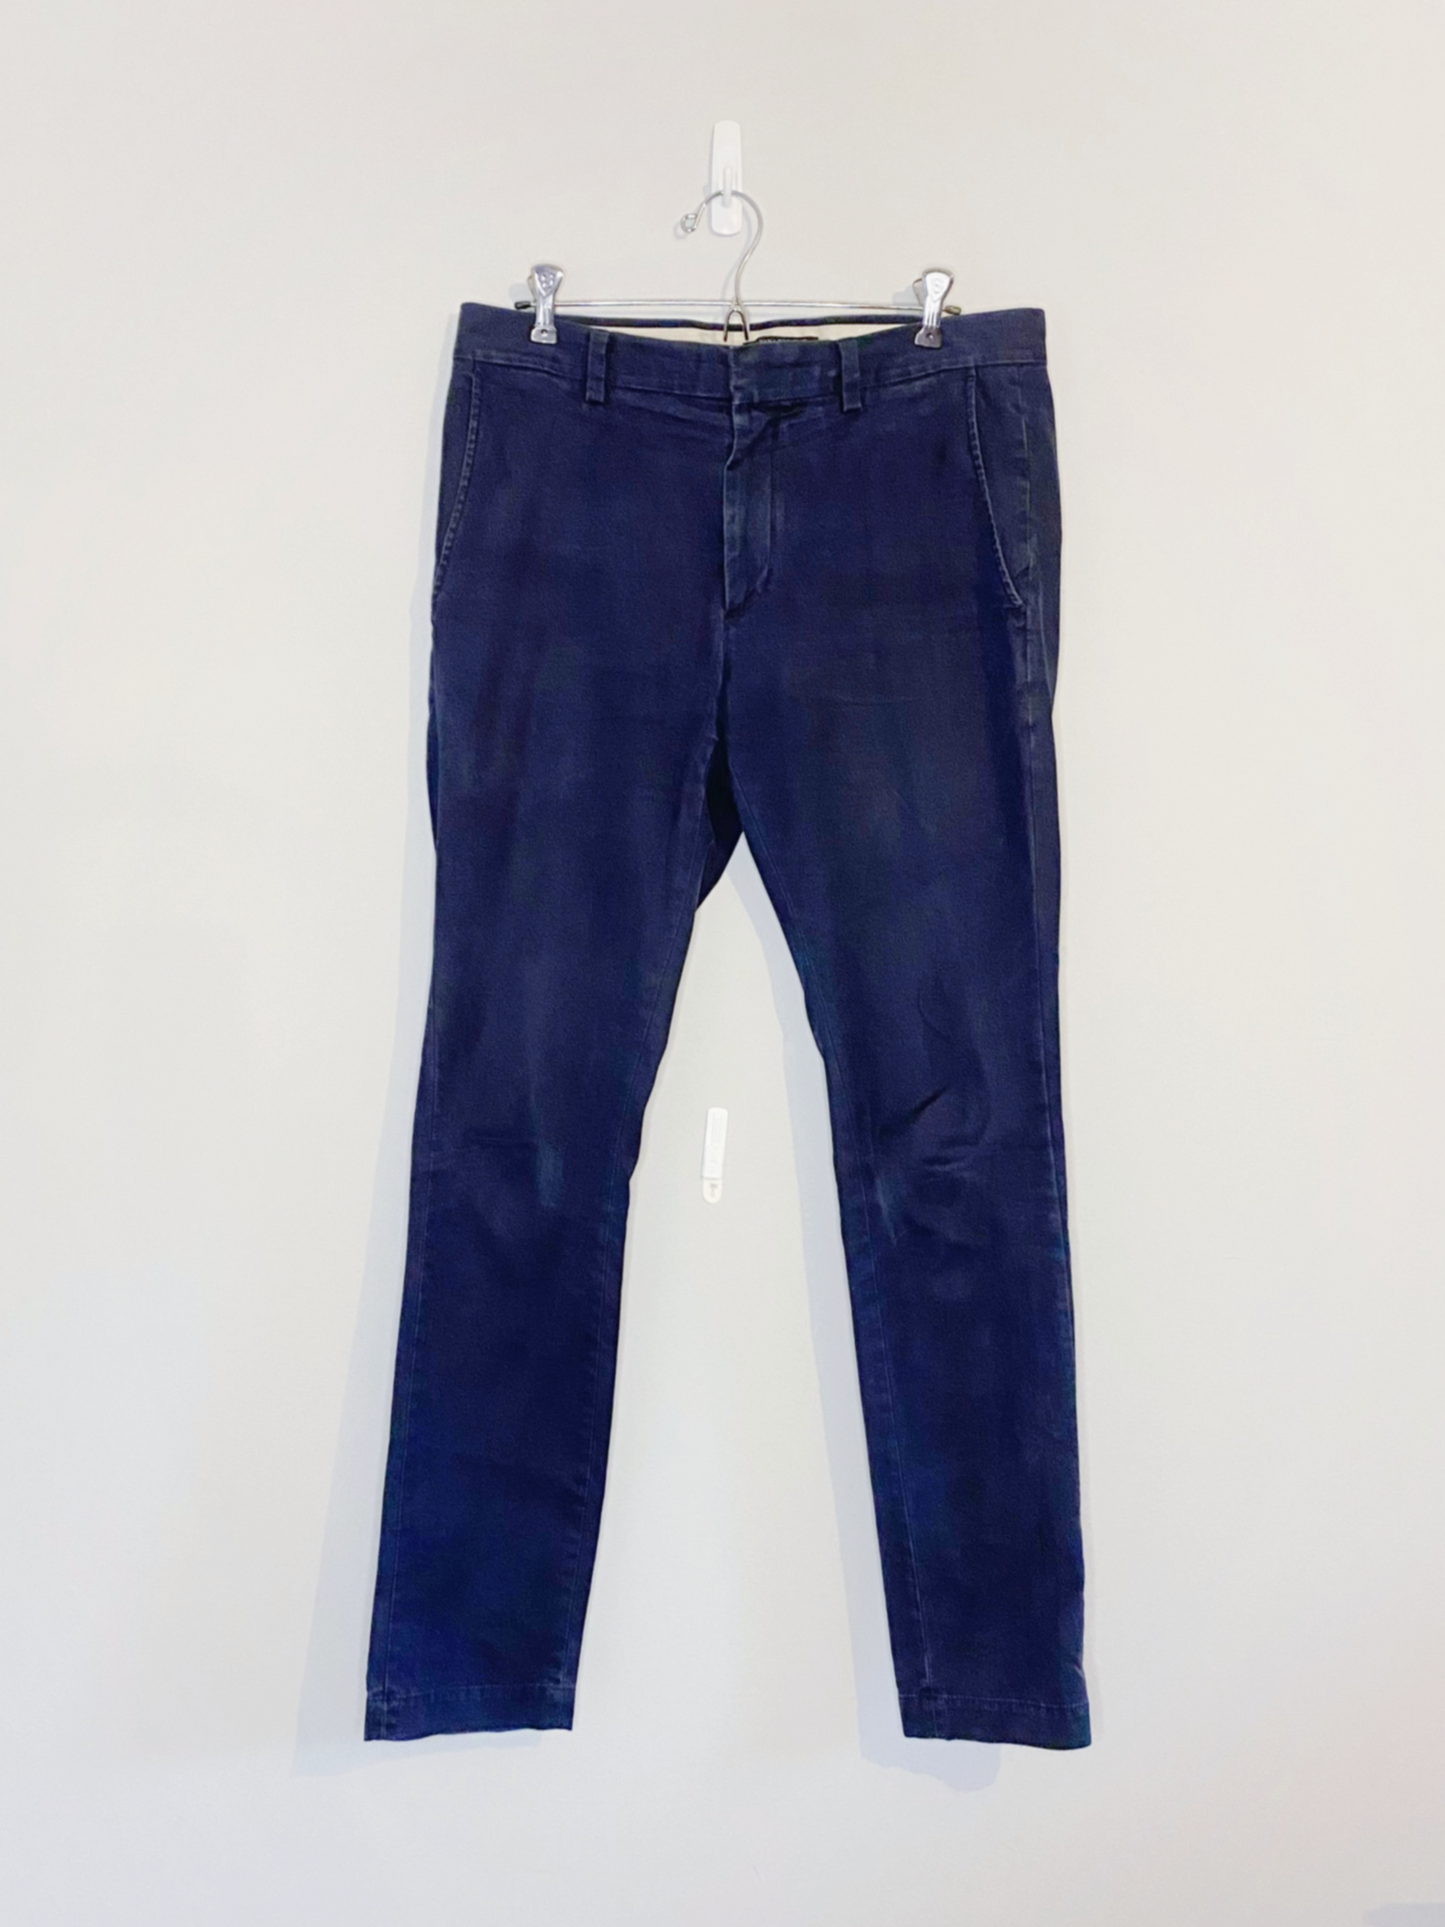 Navy Blue Pants (Size 31x32)